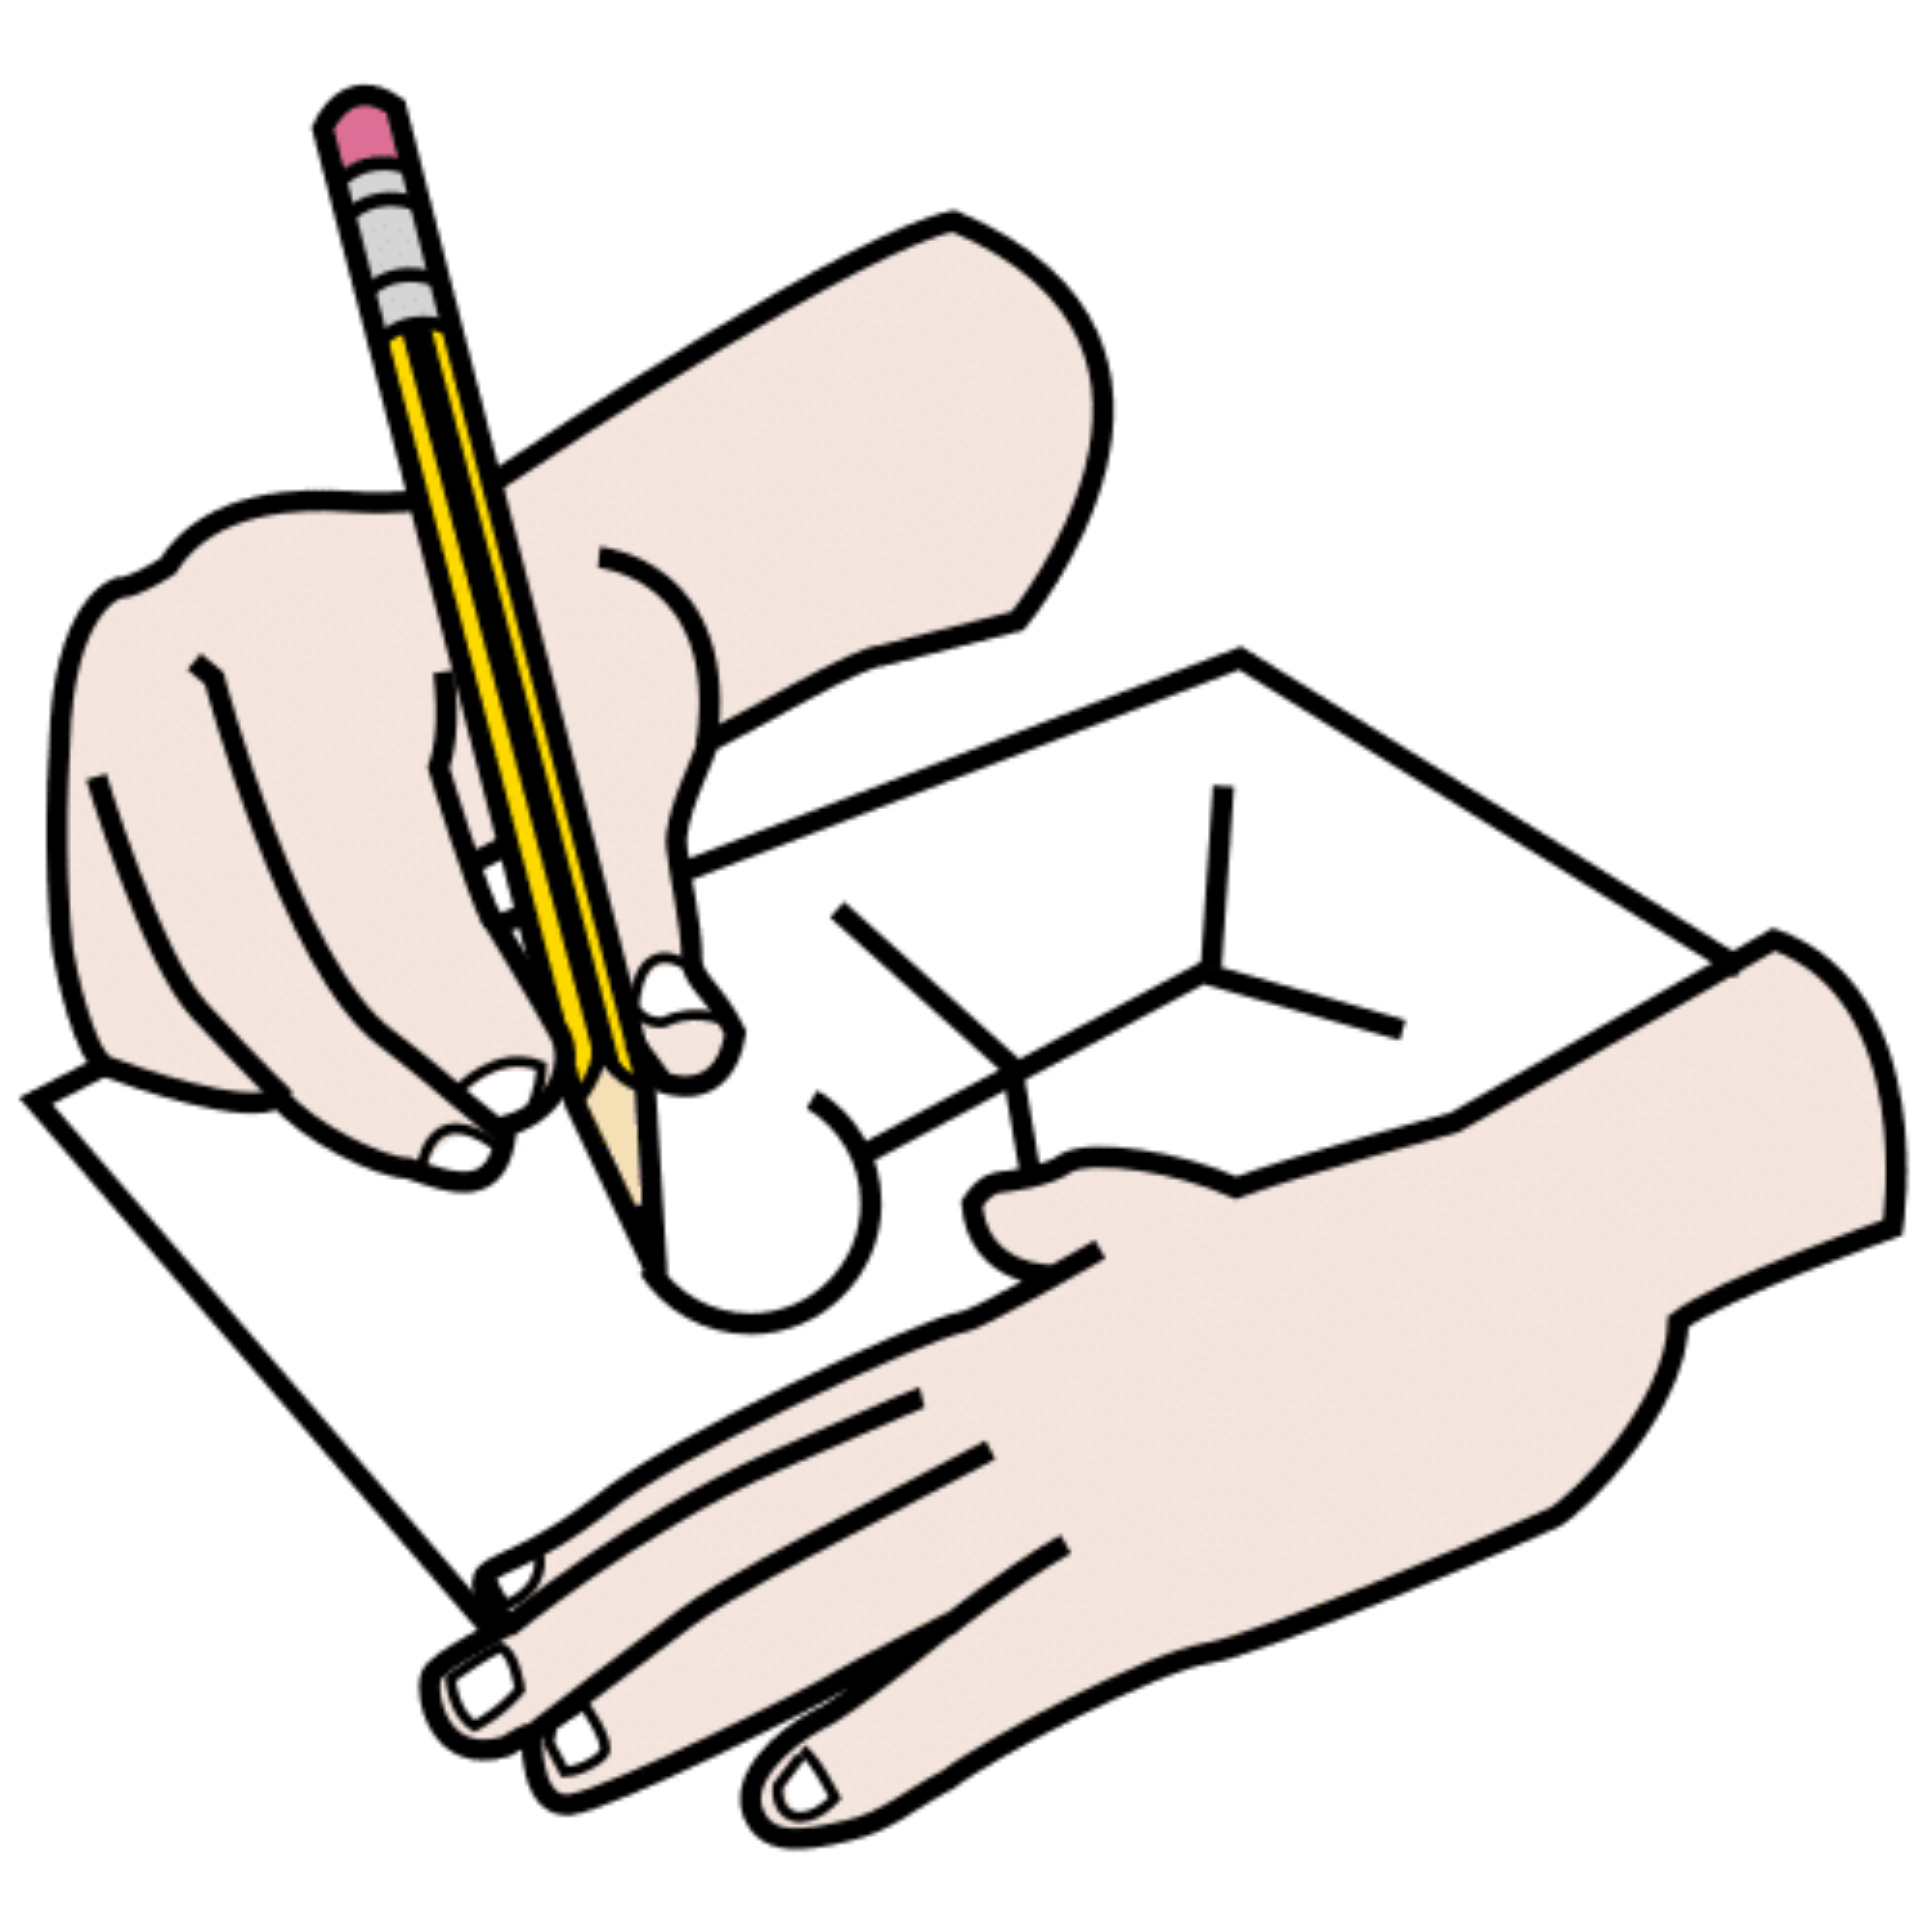 Aparecen unas manos, la izquierda sujeta el papel y la derecha dibuja un muñeco con un lápiz.